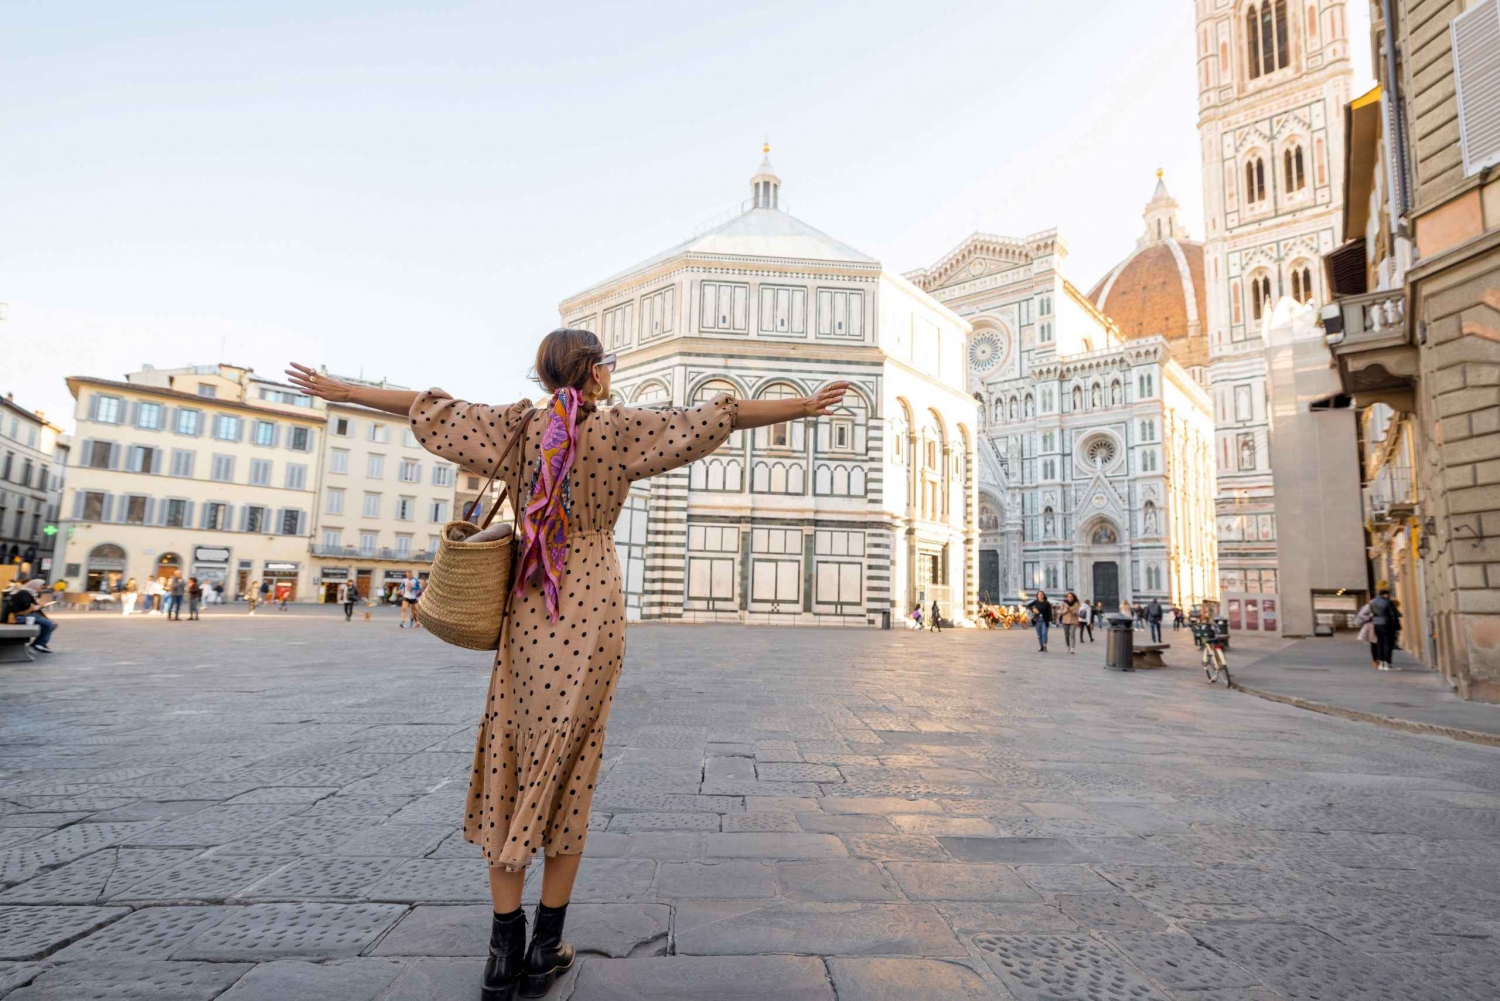 Florence: Amazing Photoshoot at the Duomo!